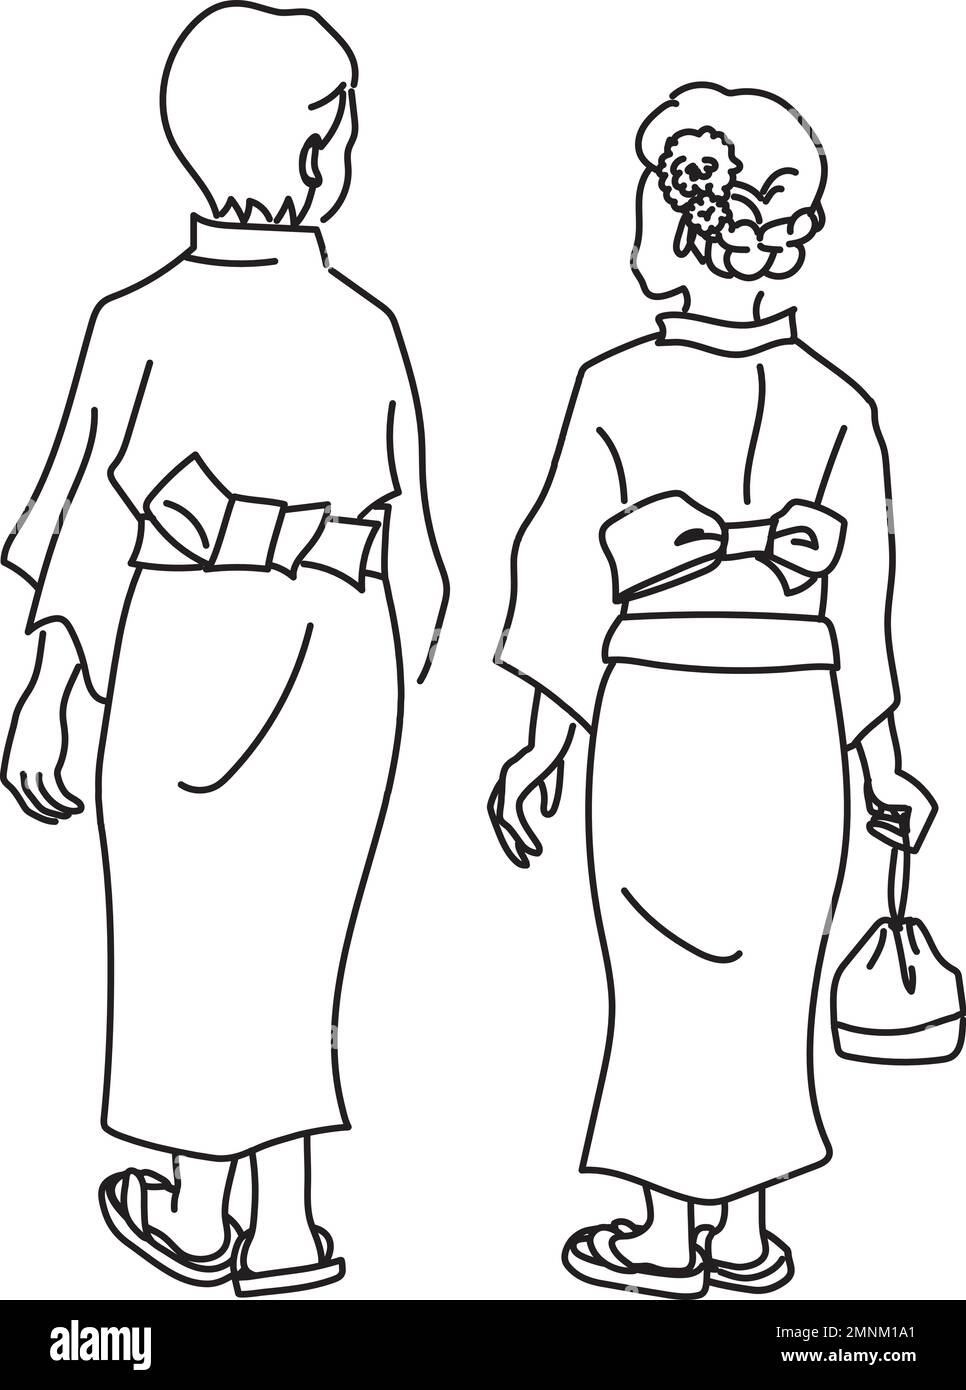 Illustrazione vettoriale della vista posteriore di uomini e donne che indossano yukata. Un uomo e una donna indossano tradizionali yukata giapponesi e vanno ad un festival. BL Illustrazione Vettoriale